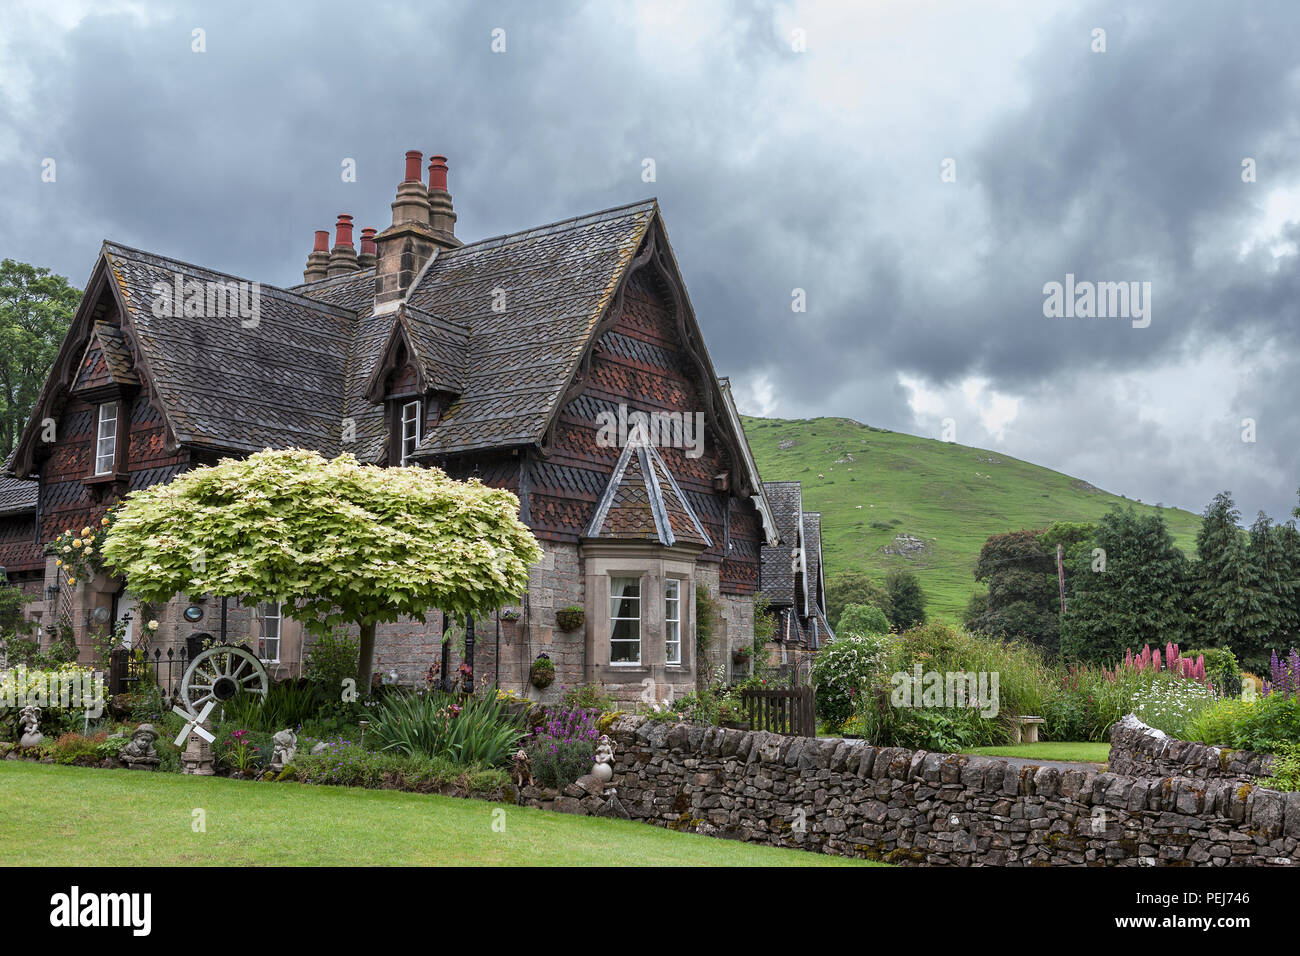 Cottage and garden, Ilam, Staffordshire, UK Stock Photo